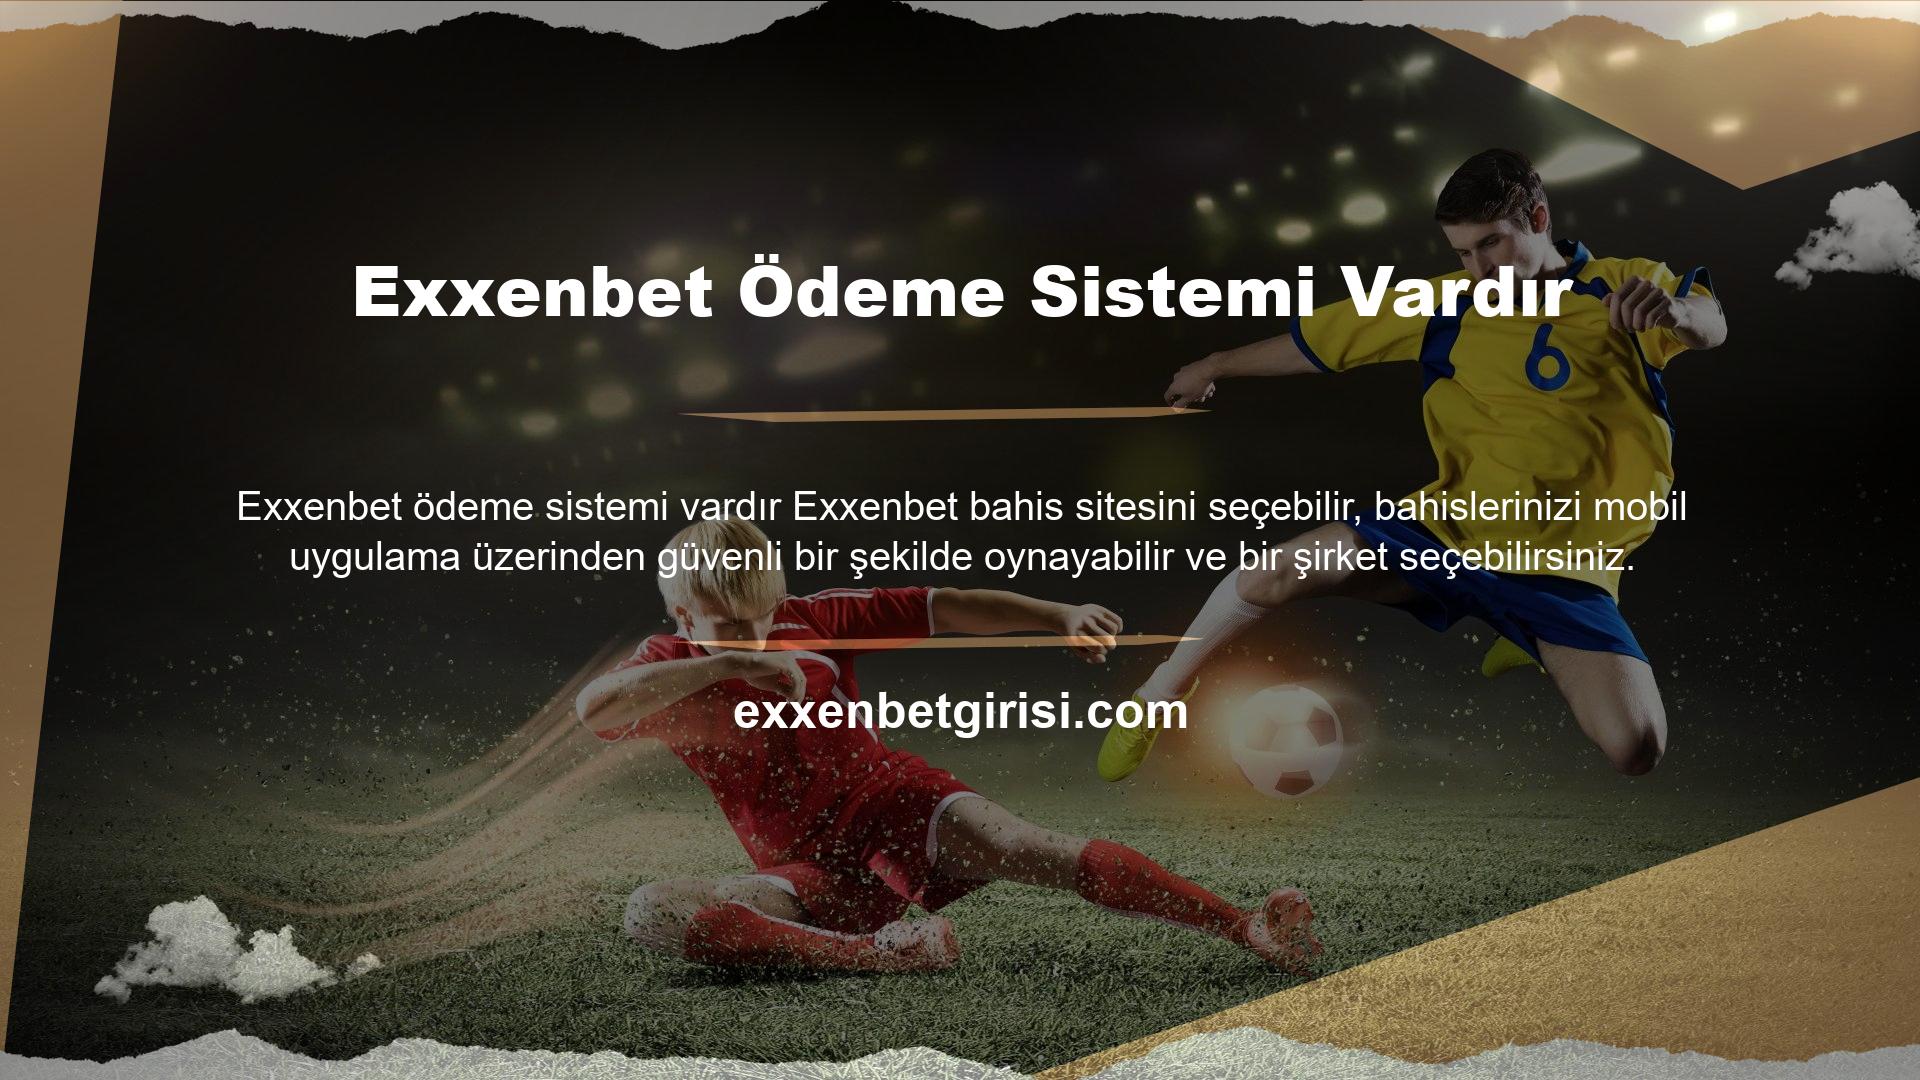 Exxenbet, bahis sitelerinde para çekme sorunu yaşayan oyuncuları kıyaslamamak için çeşitli yöntemler kullanmaya devam ediyor